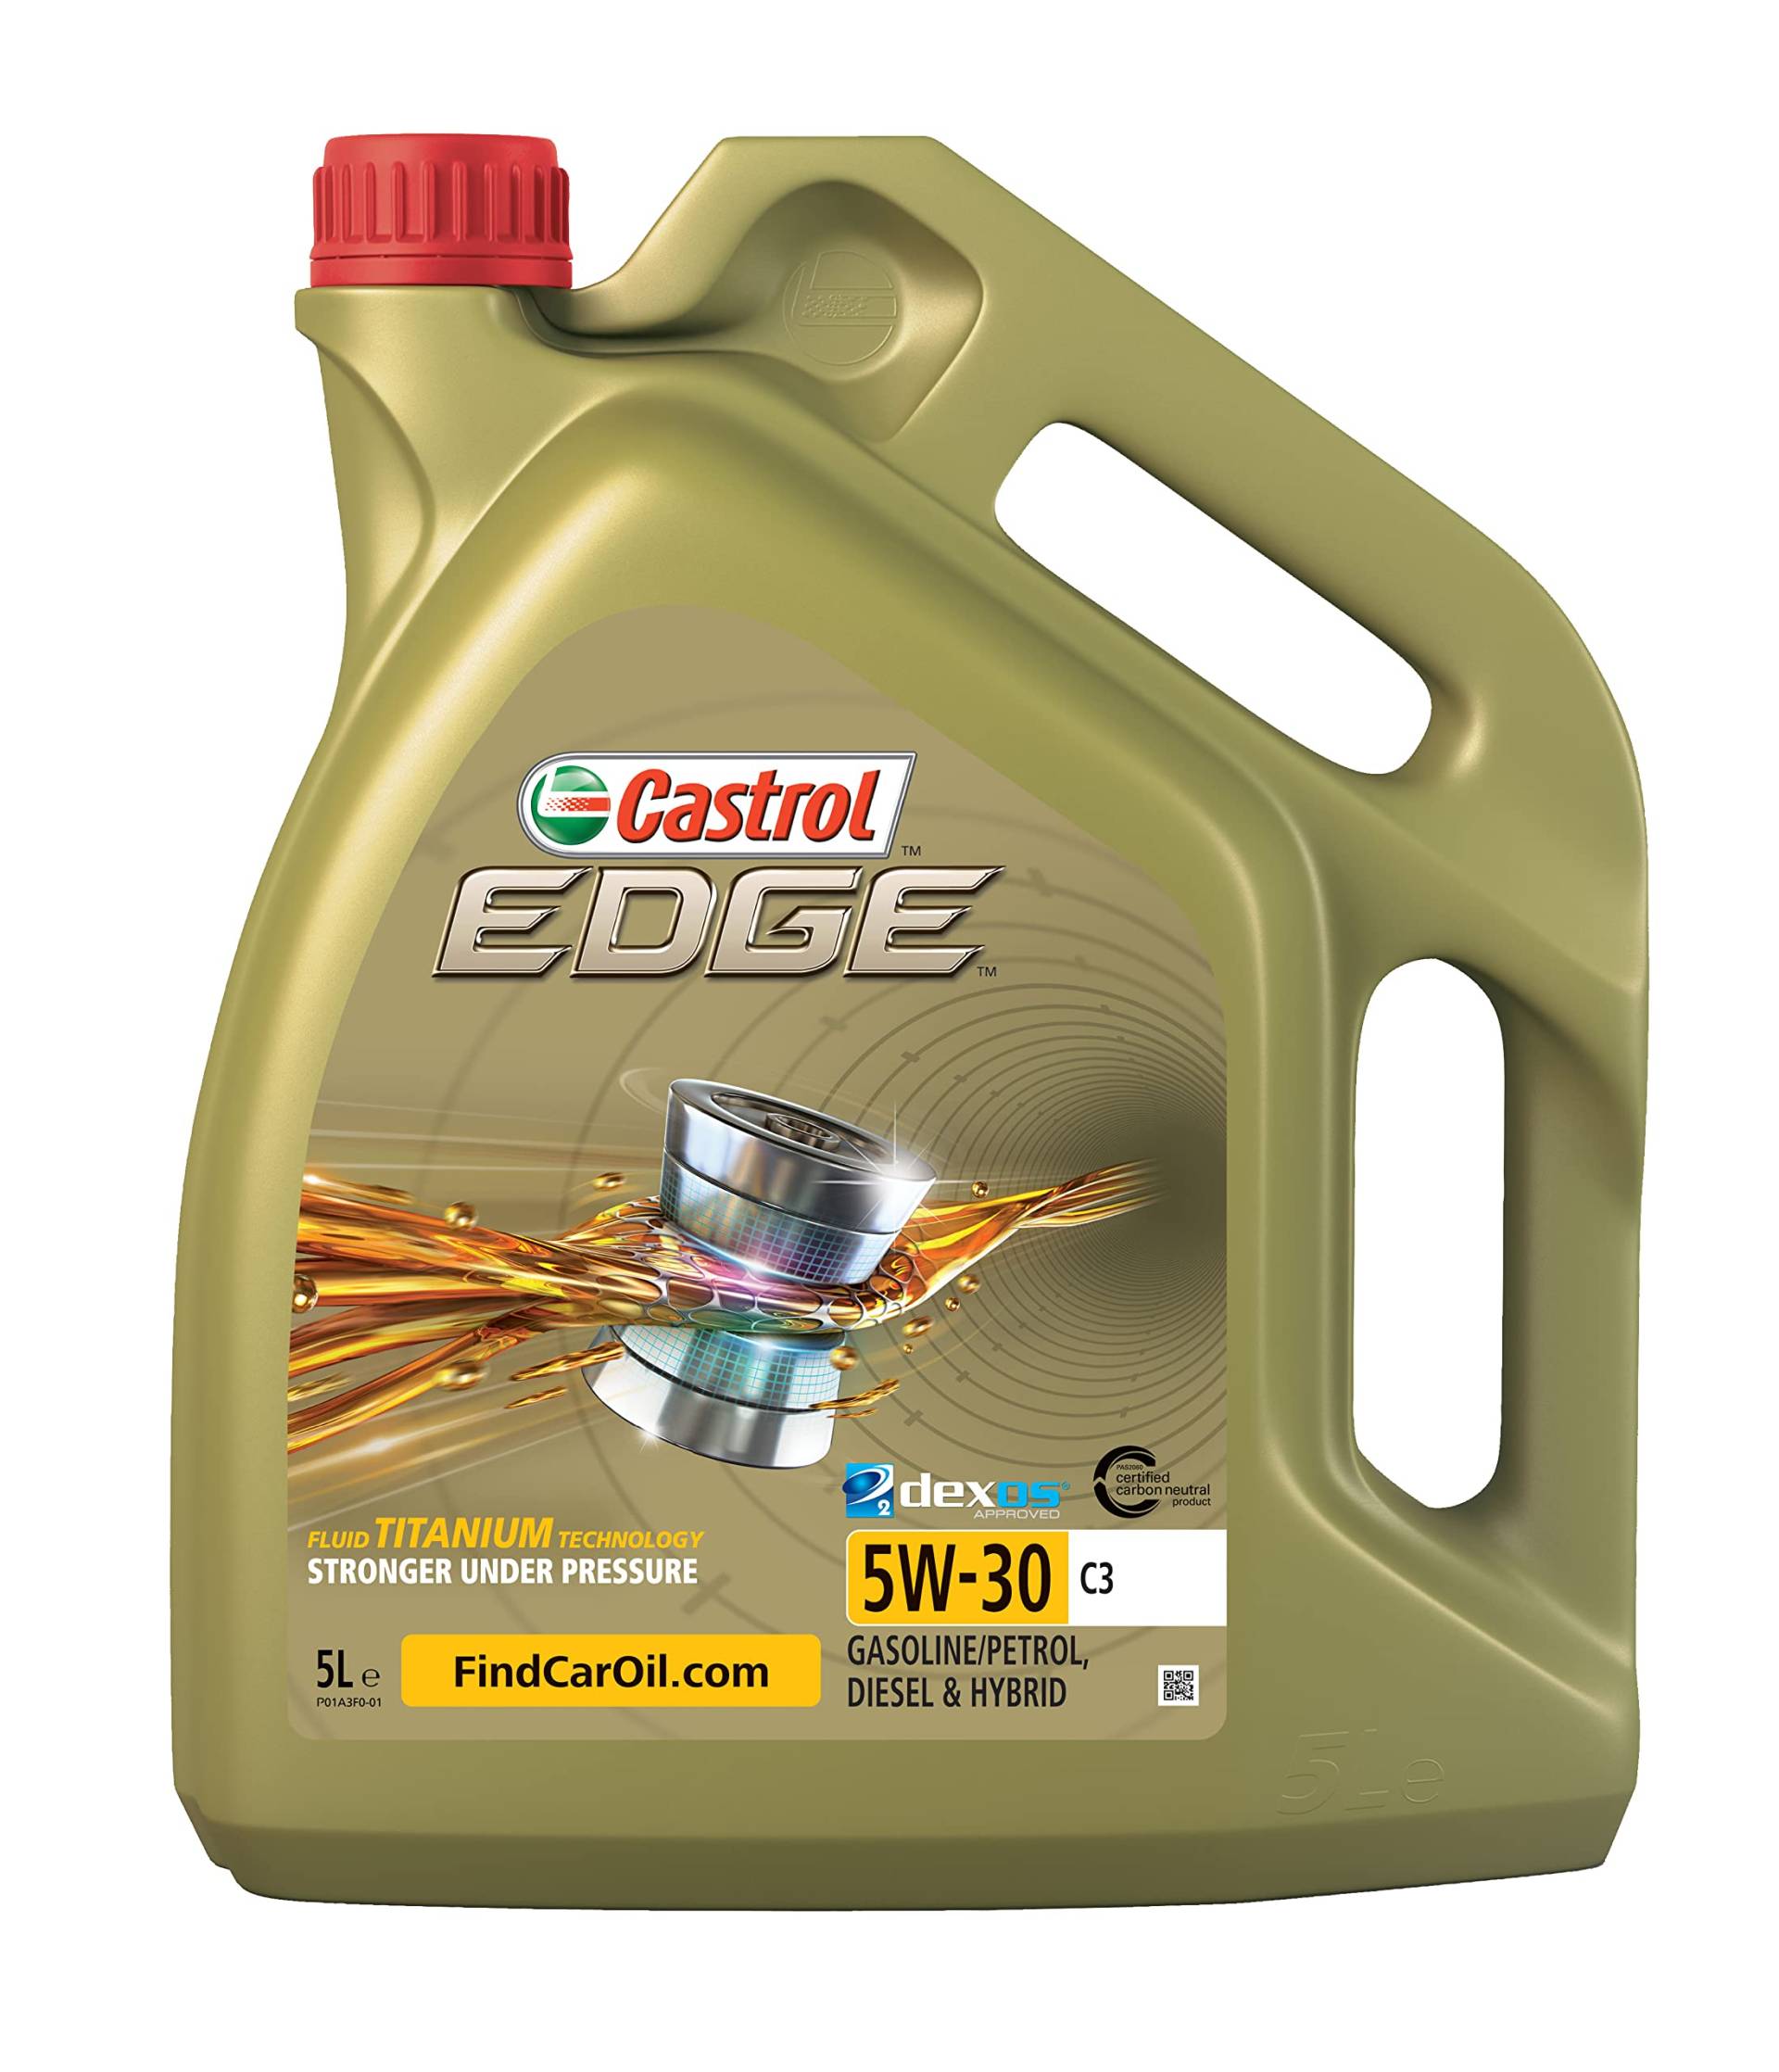 Castrol EDGE 5W-30 C3, 5 Liter von Castrol